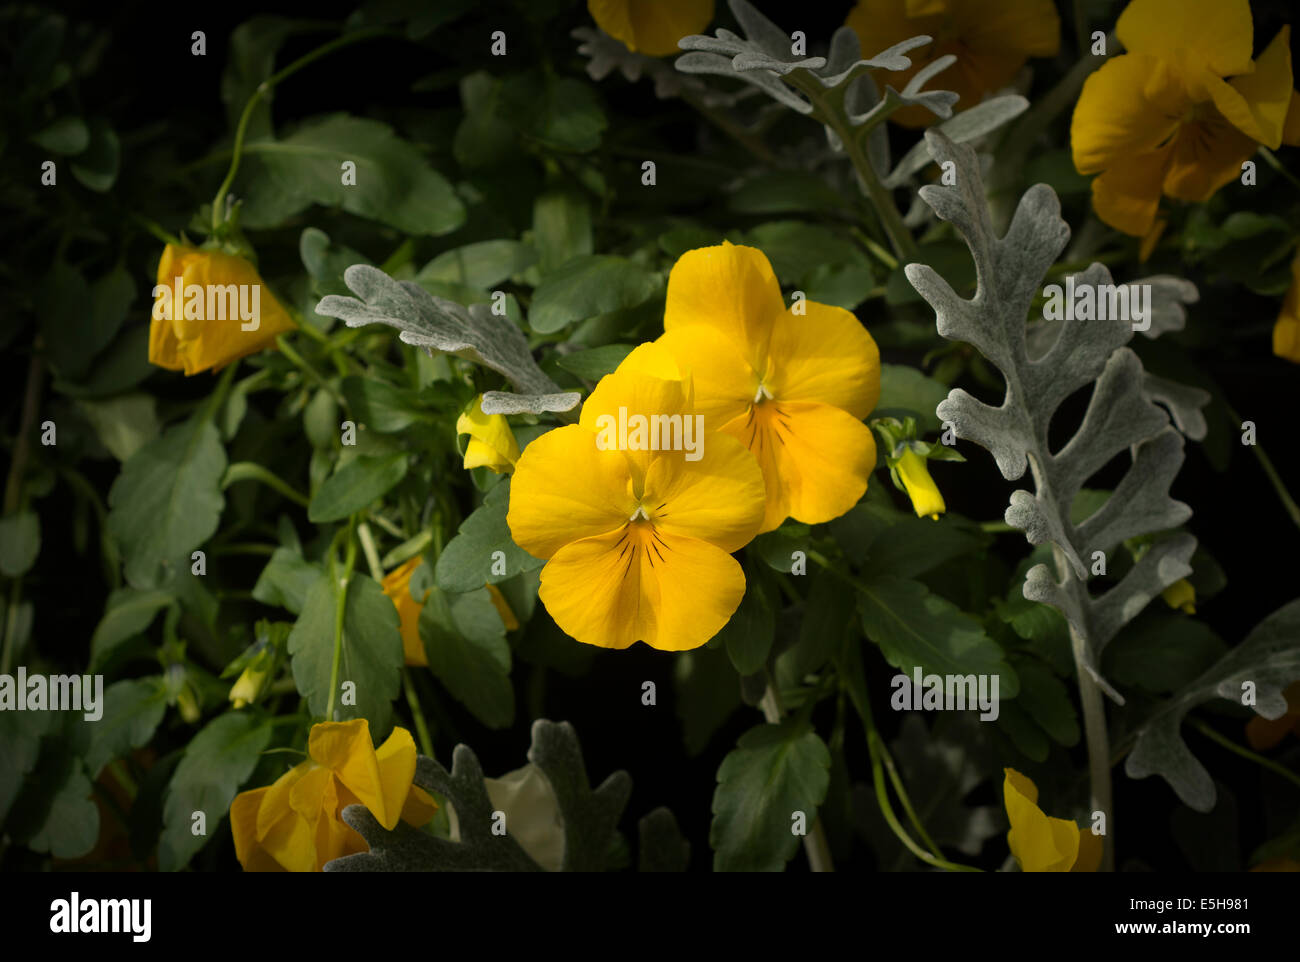 Viola pedunculata, California Golden violetta, Johnny Jump Up o giallo Pansy è un perenne millefiori giallo Foto Stock